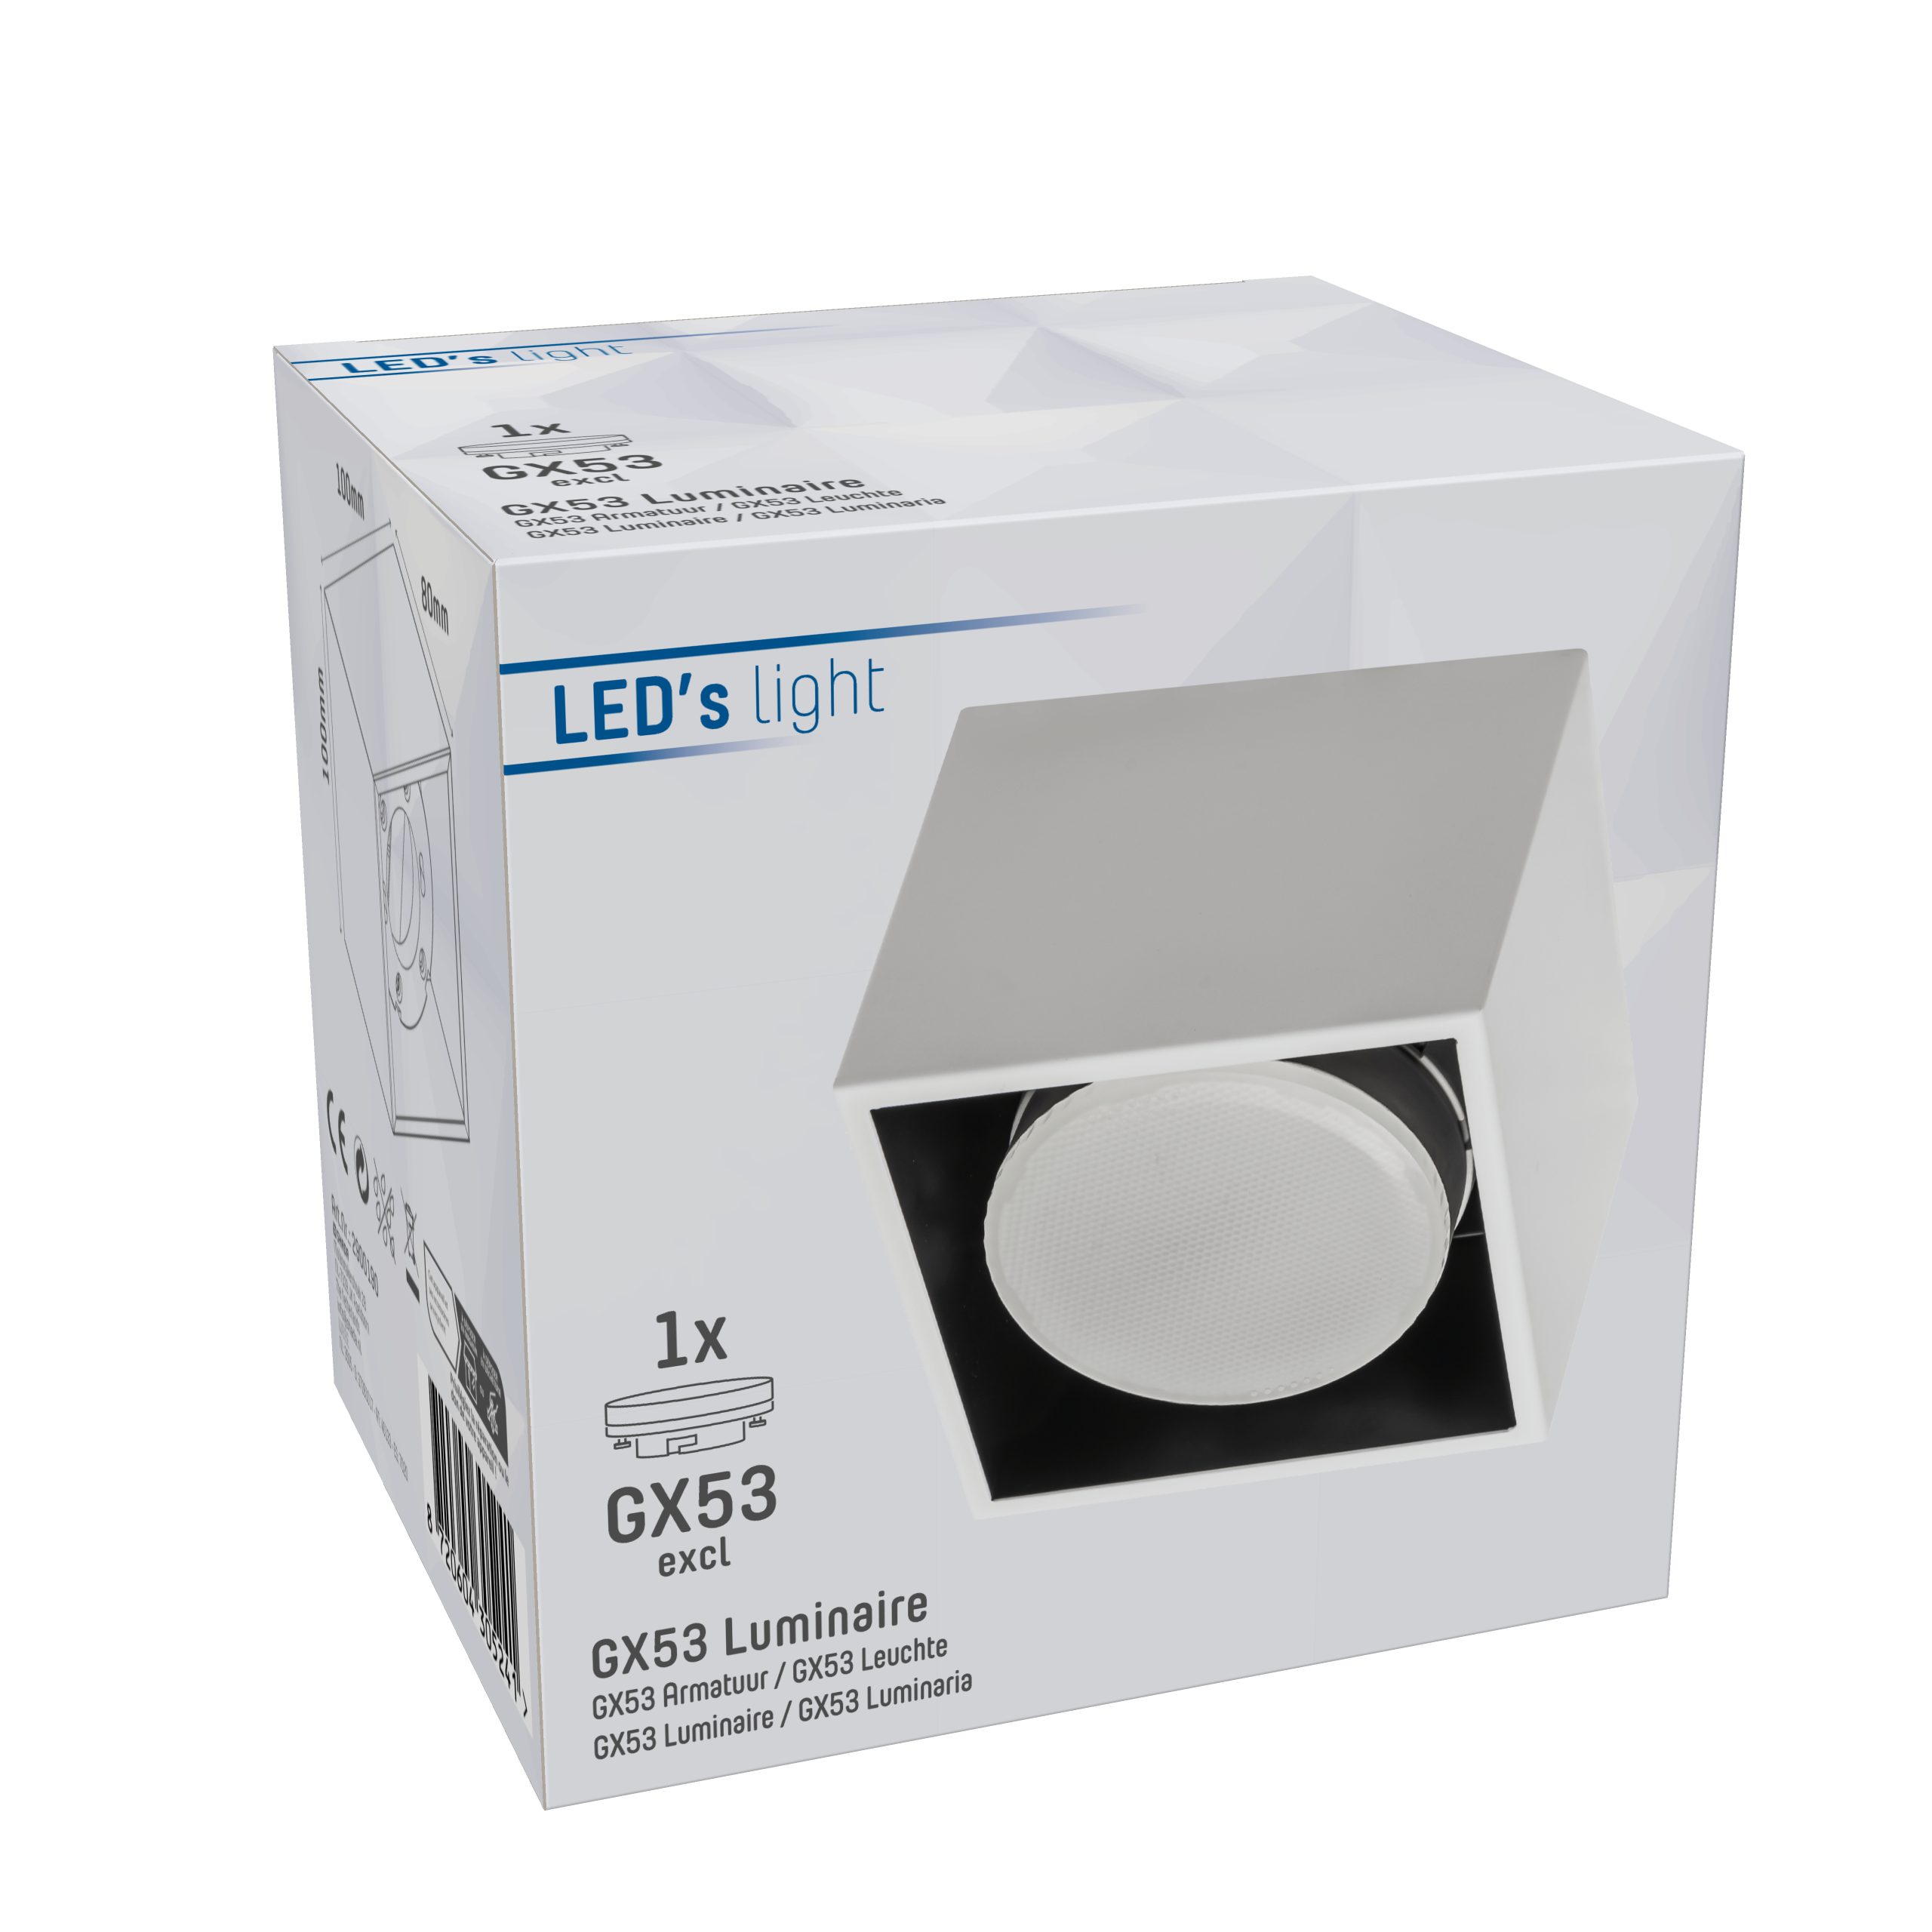 LED's 1x 12W light Deckenleuchte, GX53 2900190 Deckenleuchte LED LED, weiß bis